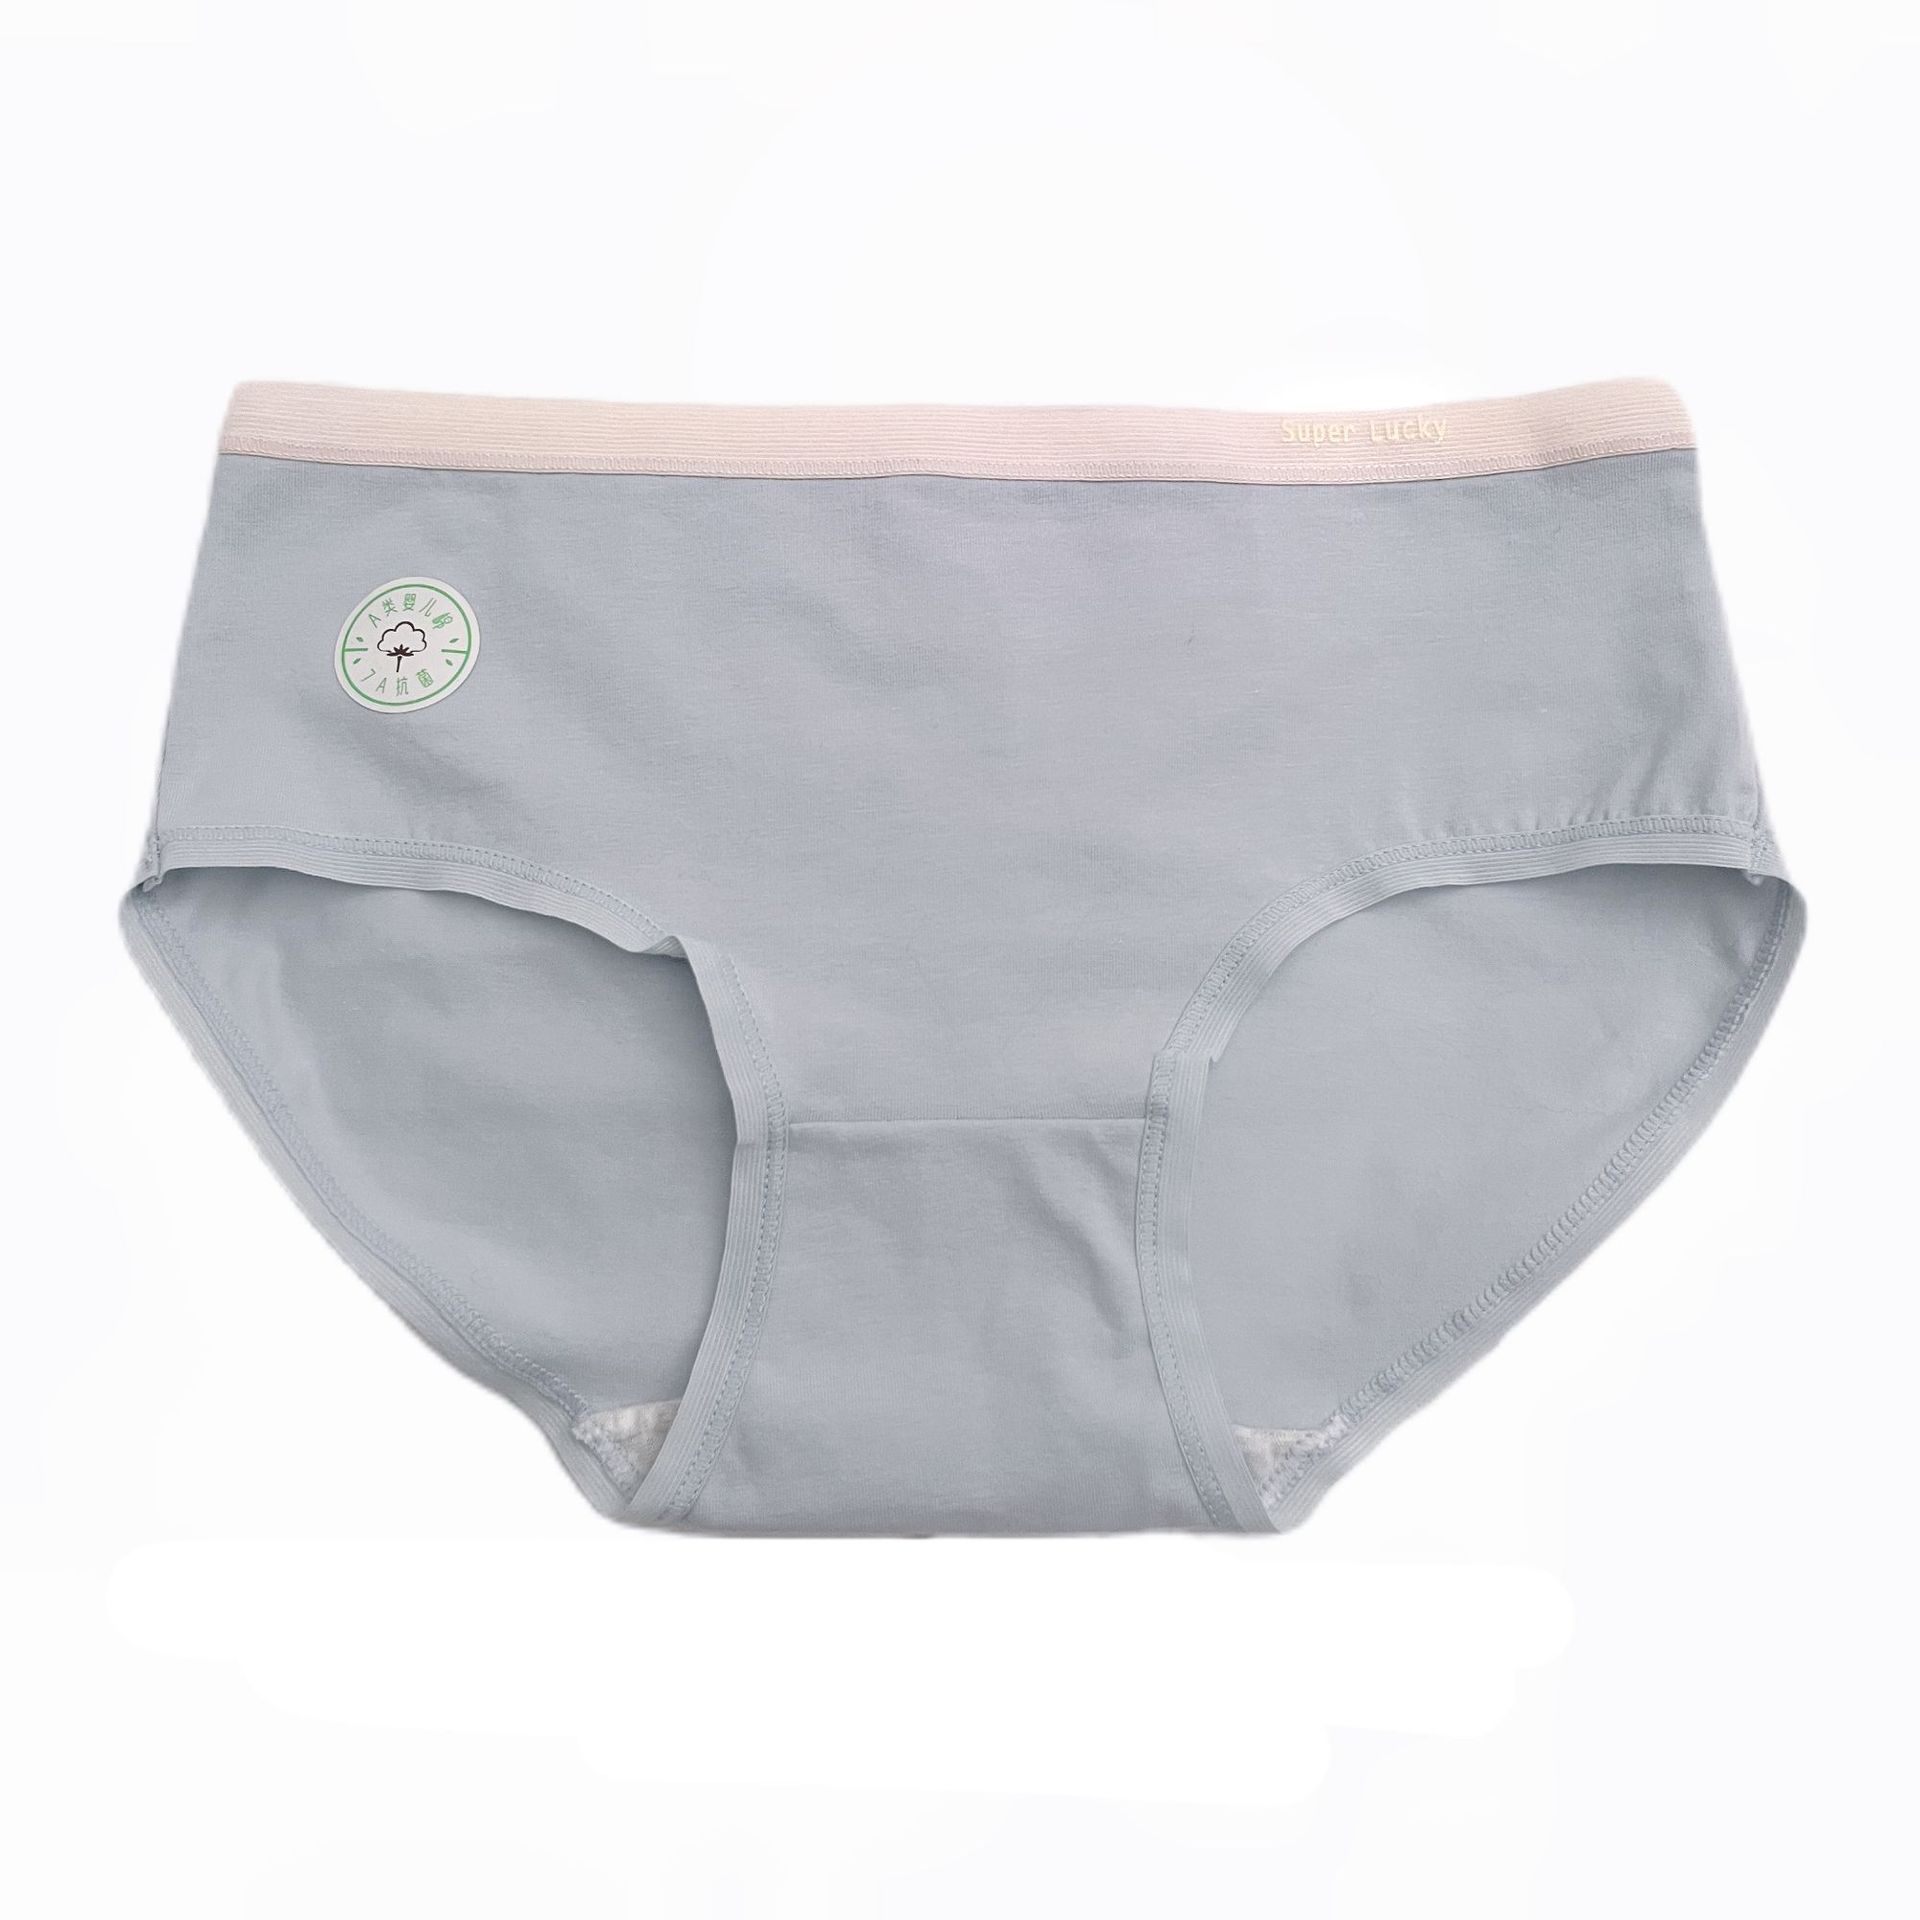 7A Cotton Underwear Women's Class A Baby Cotton Cotton Anti-Bottom Simple Girl Seamless Underwear 50S Women's Underwear